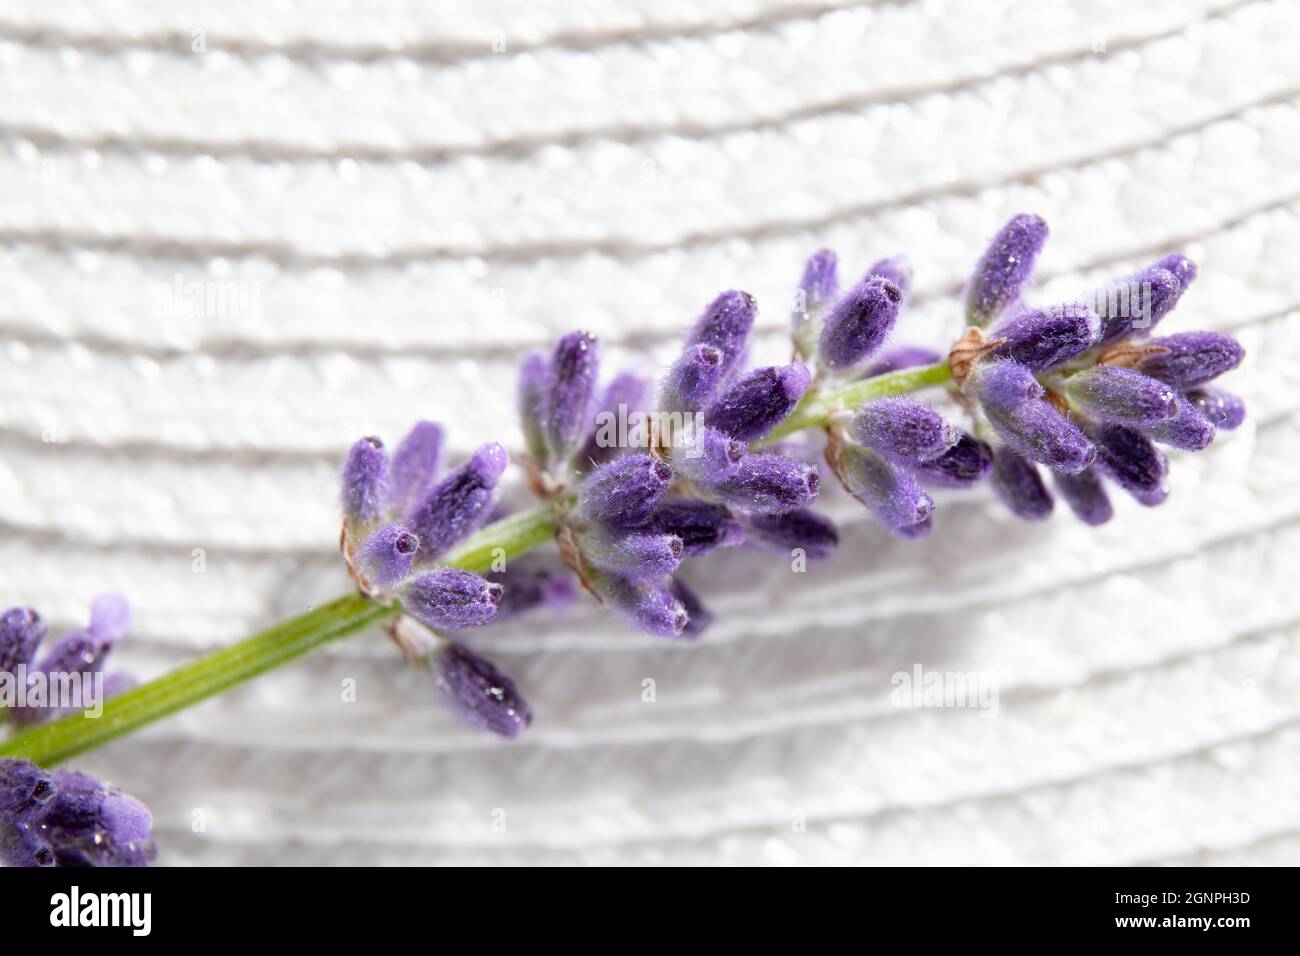 Nahaufnahme von Lavandula angustifolia, auch bekannt als gewöhnlicher Lavendel, echter Lavendel oder englische Lavendelblüte auf weißem Hintergrund. Makrostudio. Stockfoto